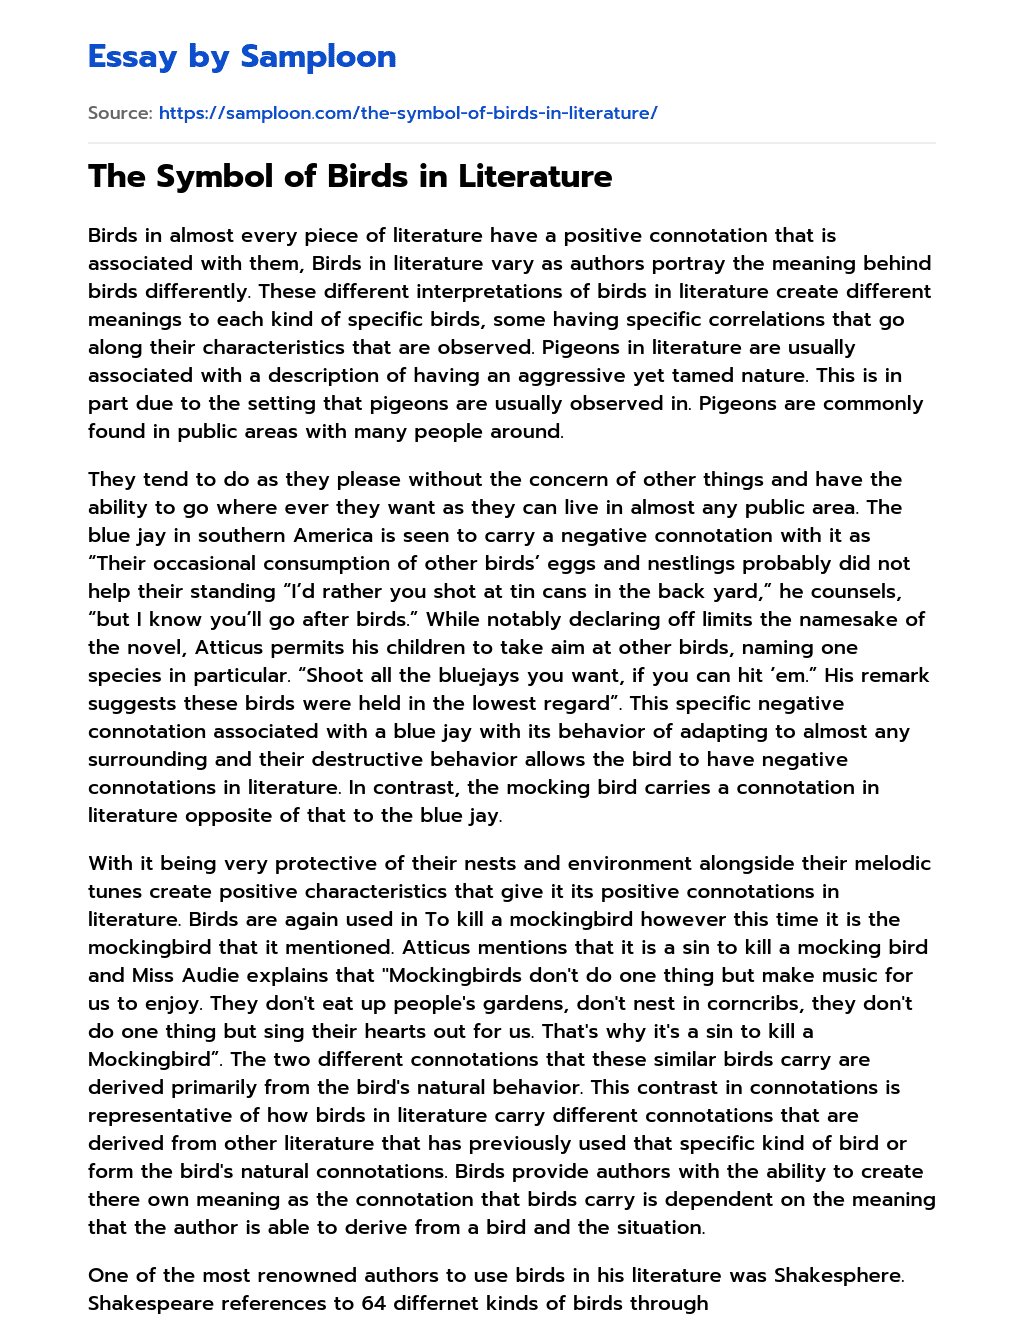 The Symbol of Birds in Literature essay